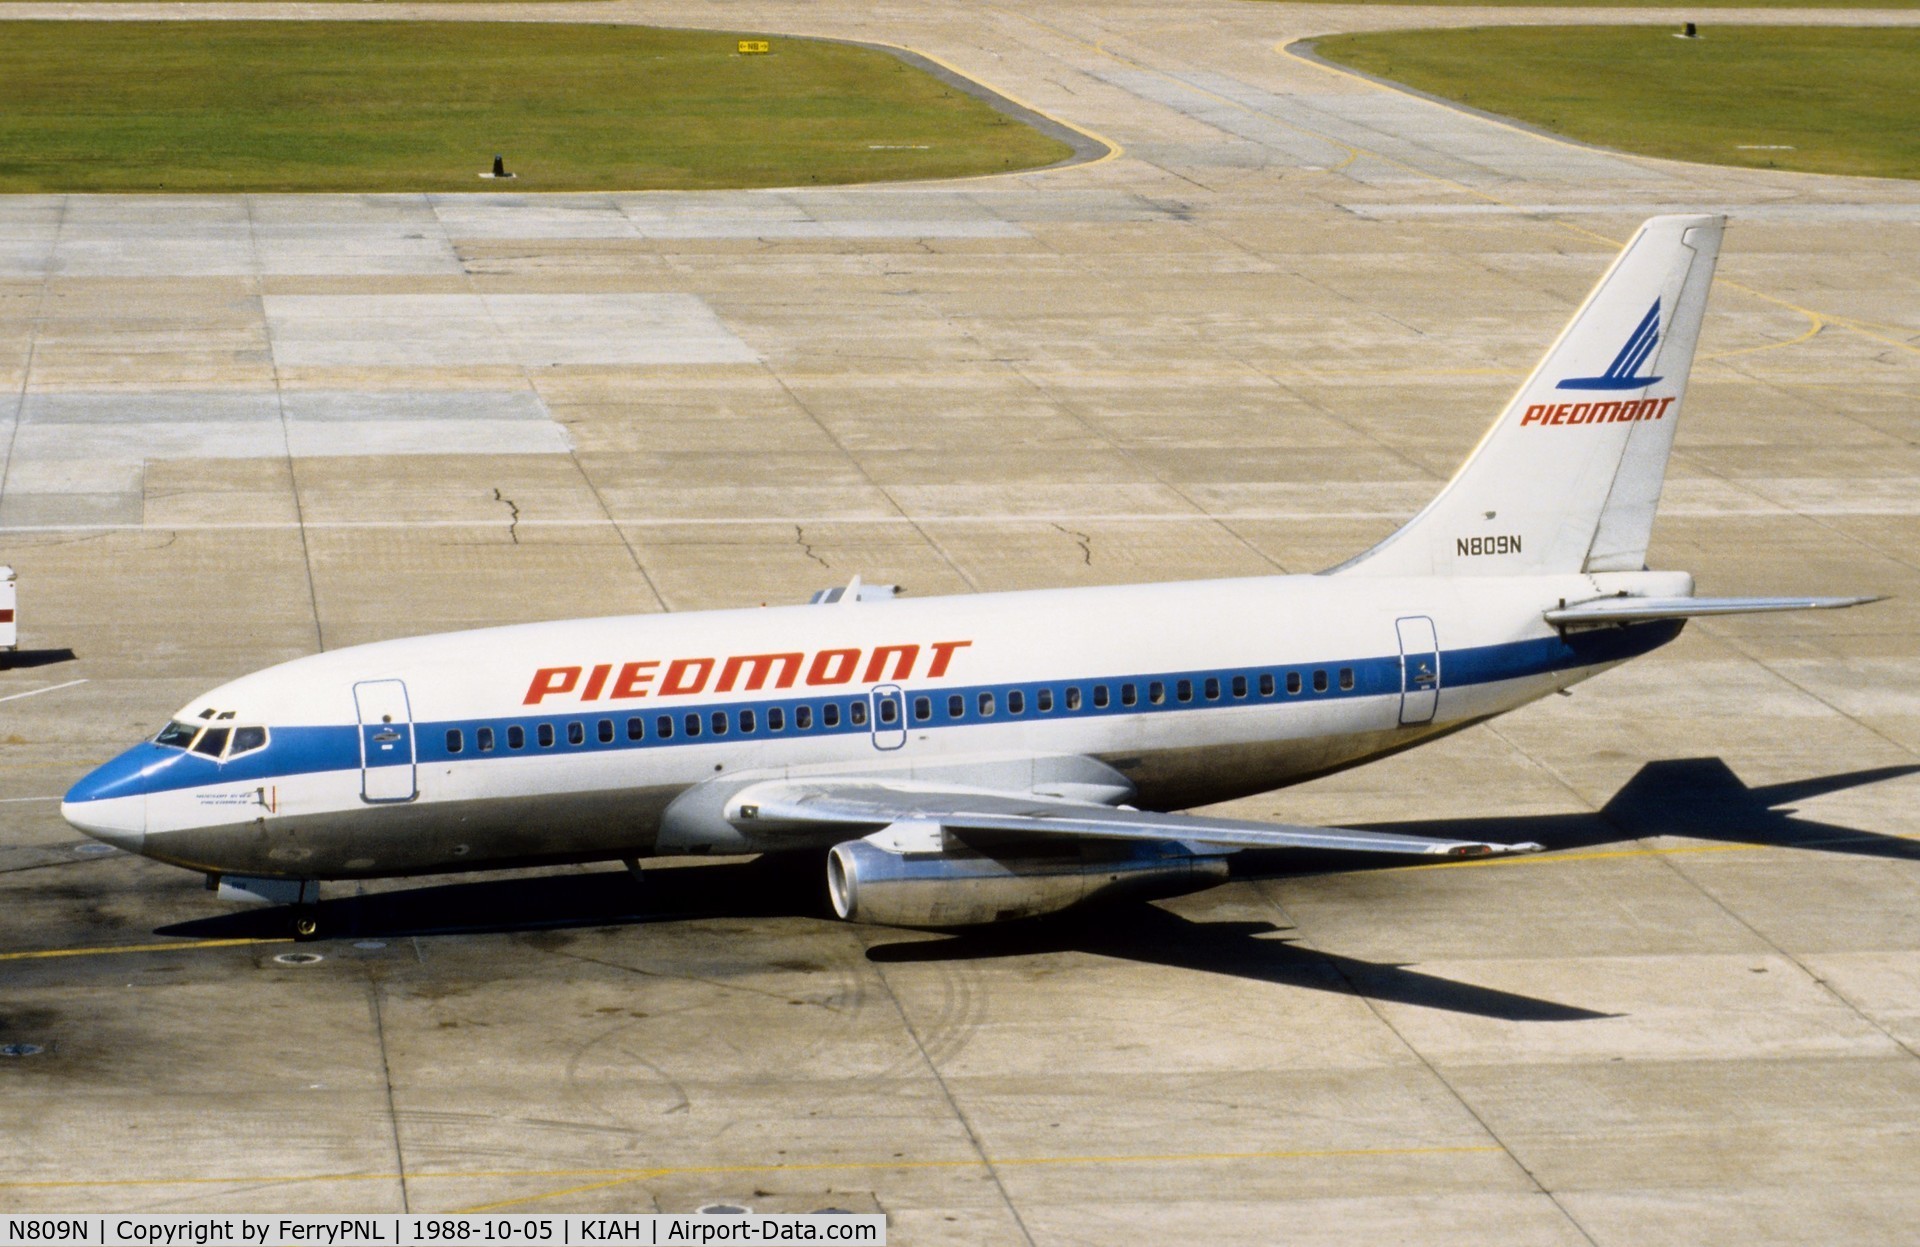 N809N, 1983 Boeing 737-201 C/N 22867, Piedmont B732 arriving at its gate